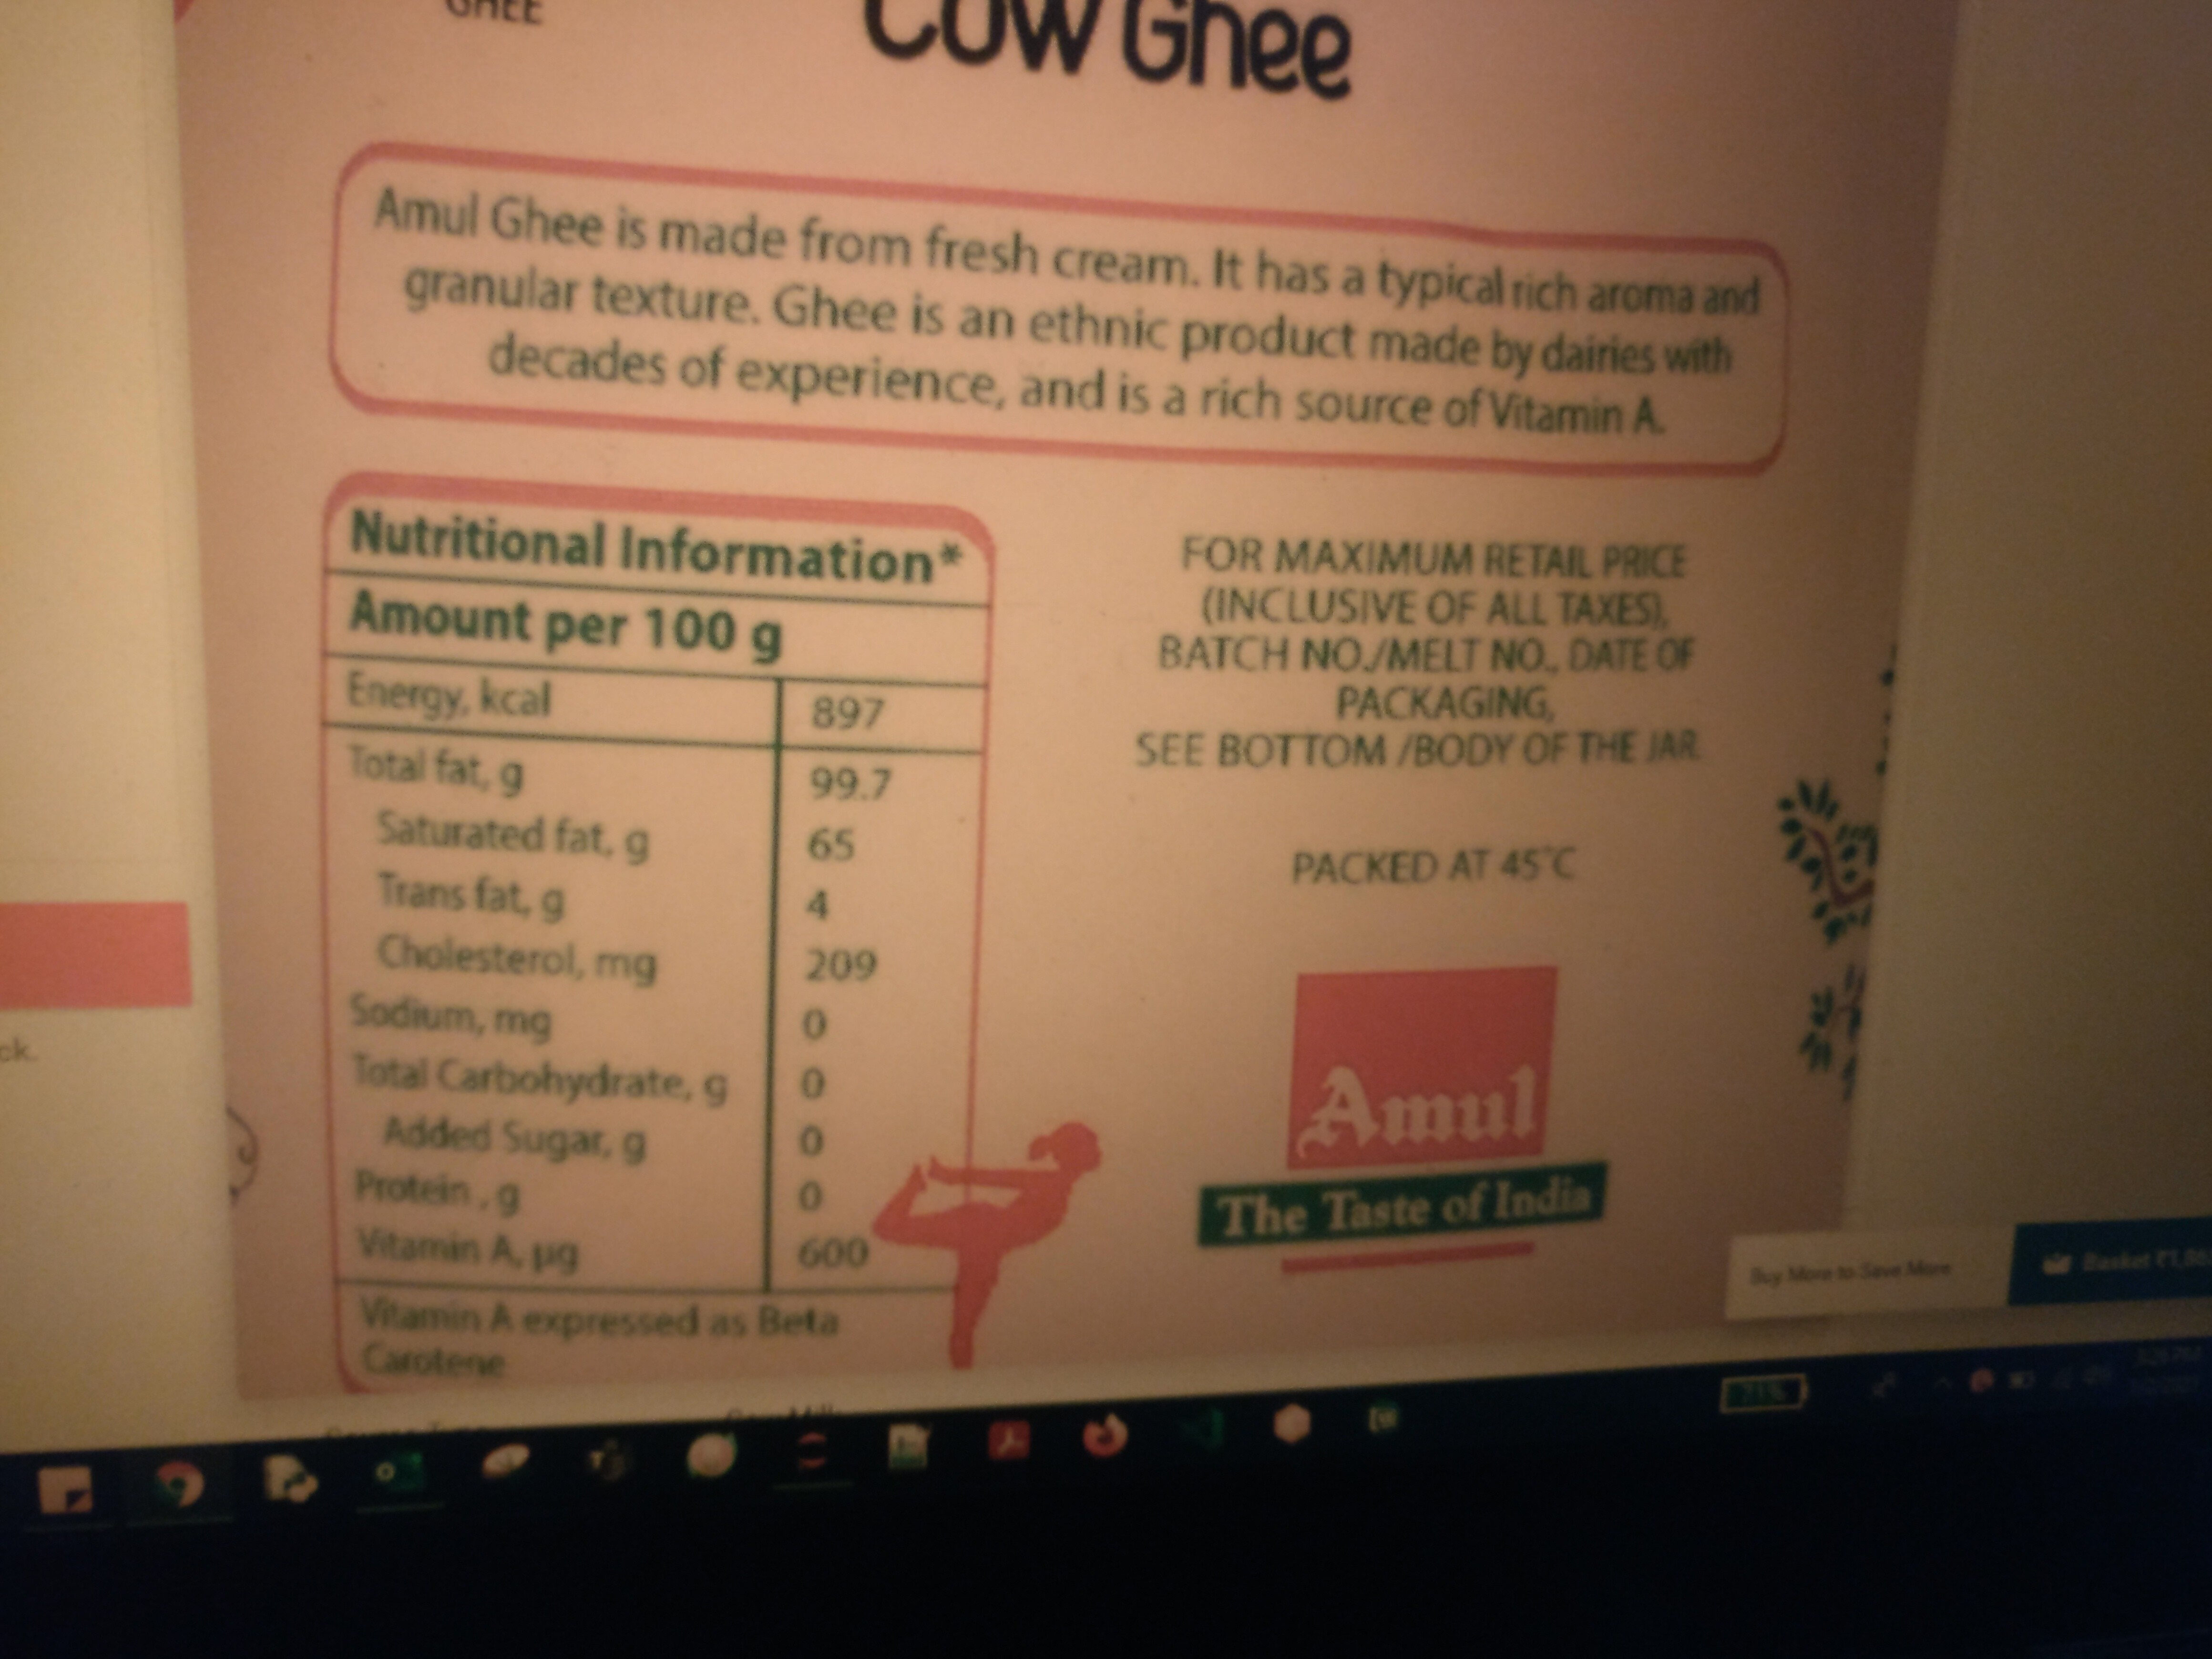 amul cow ghee - Ingredients